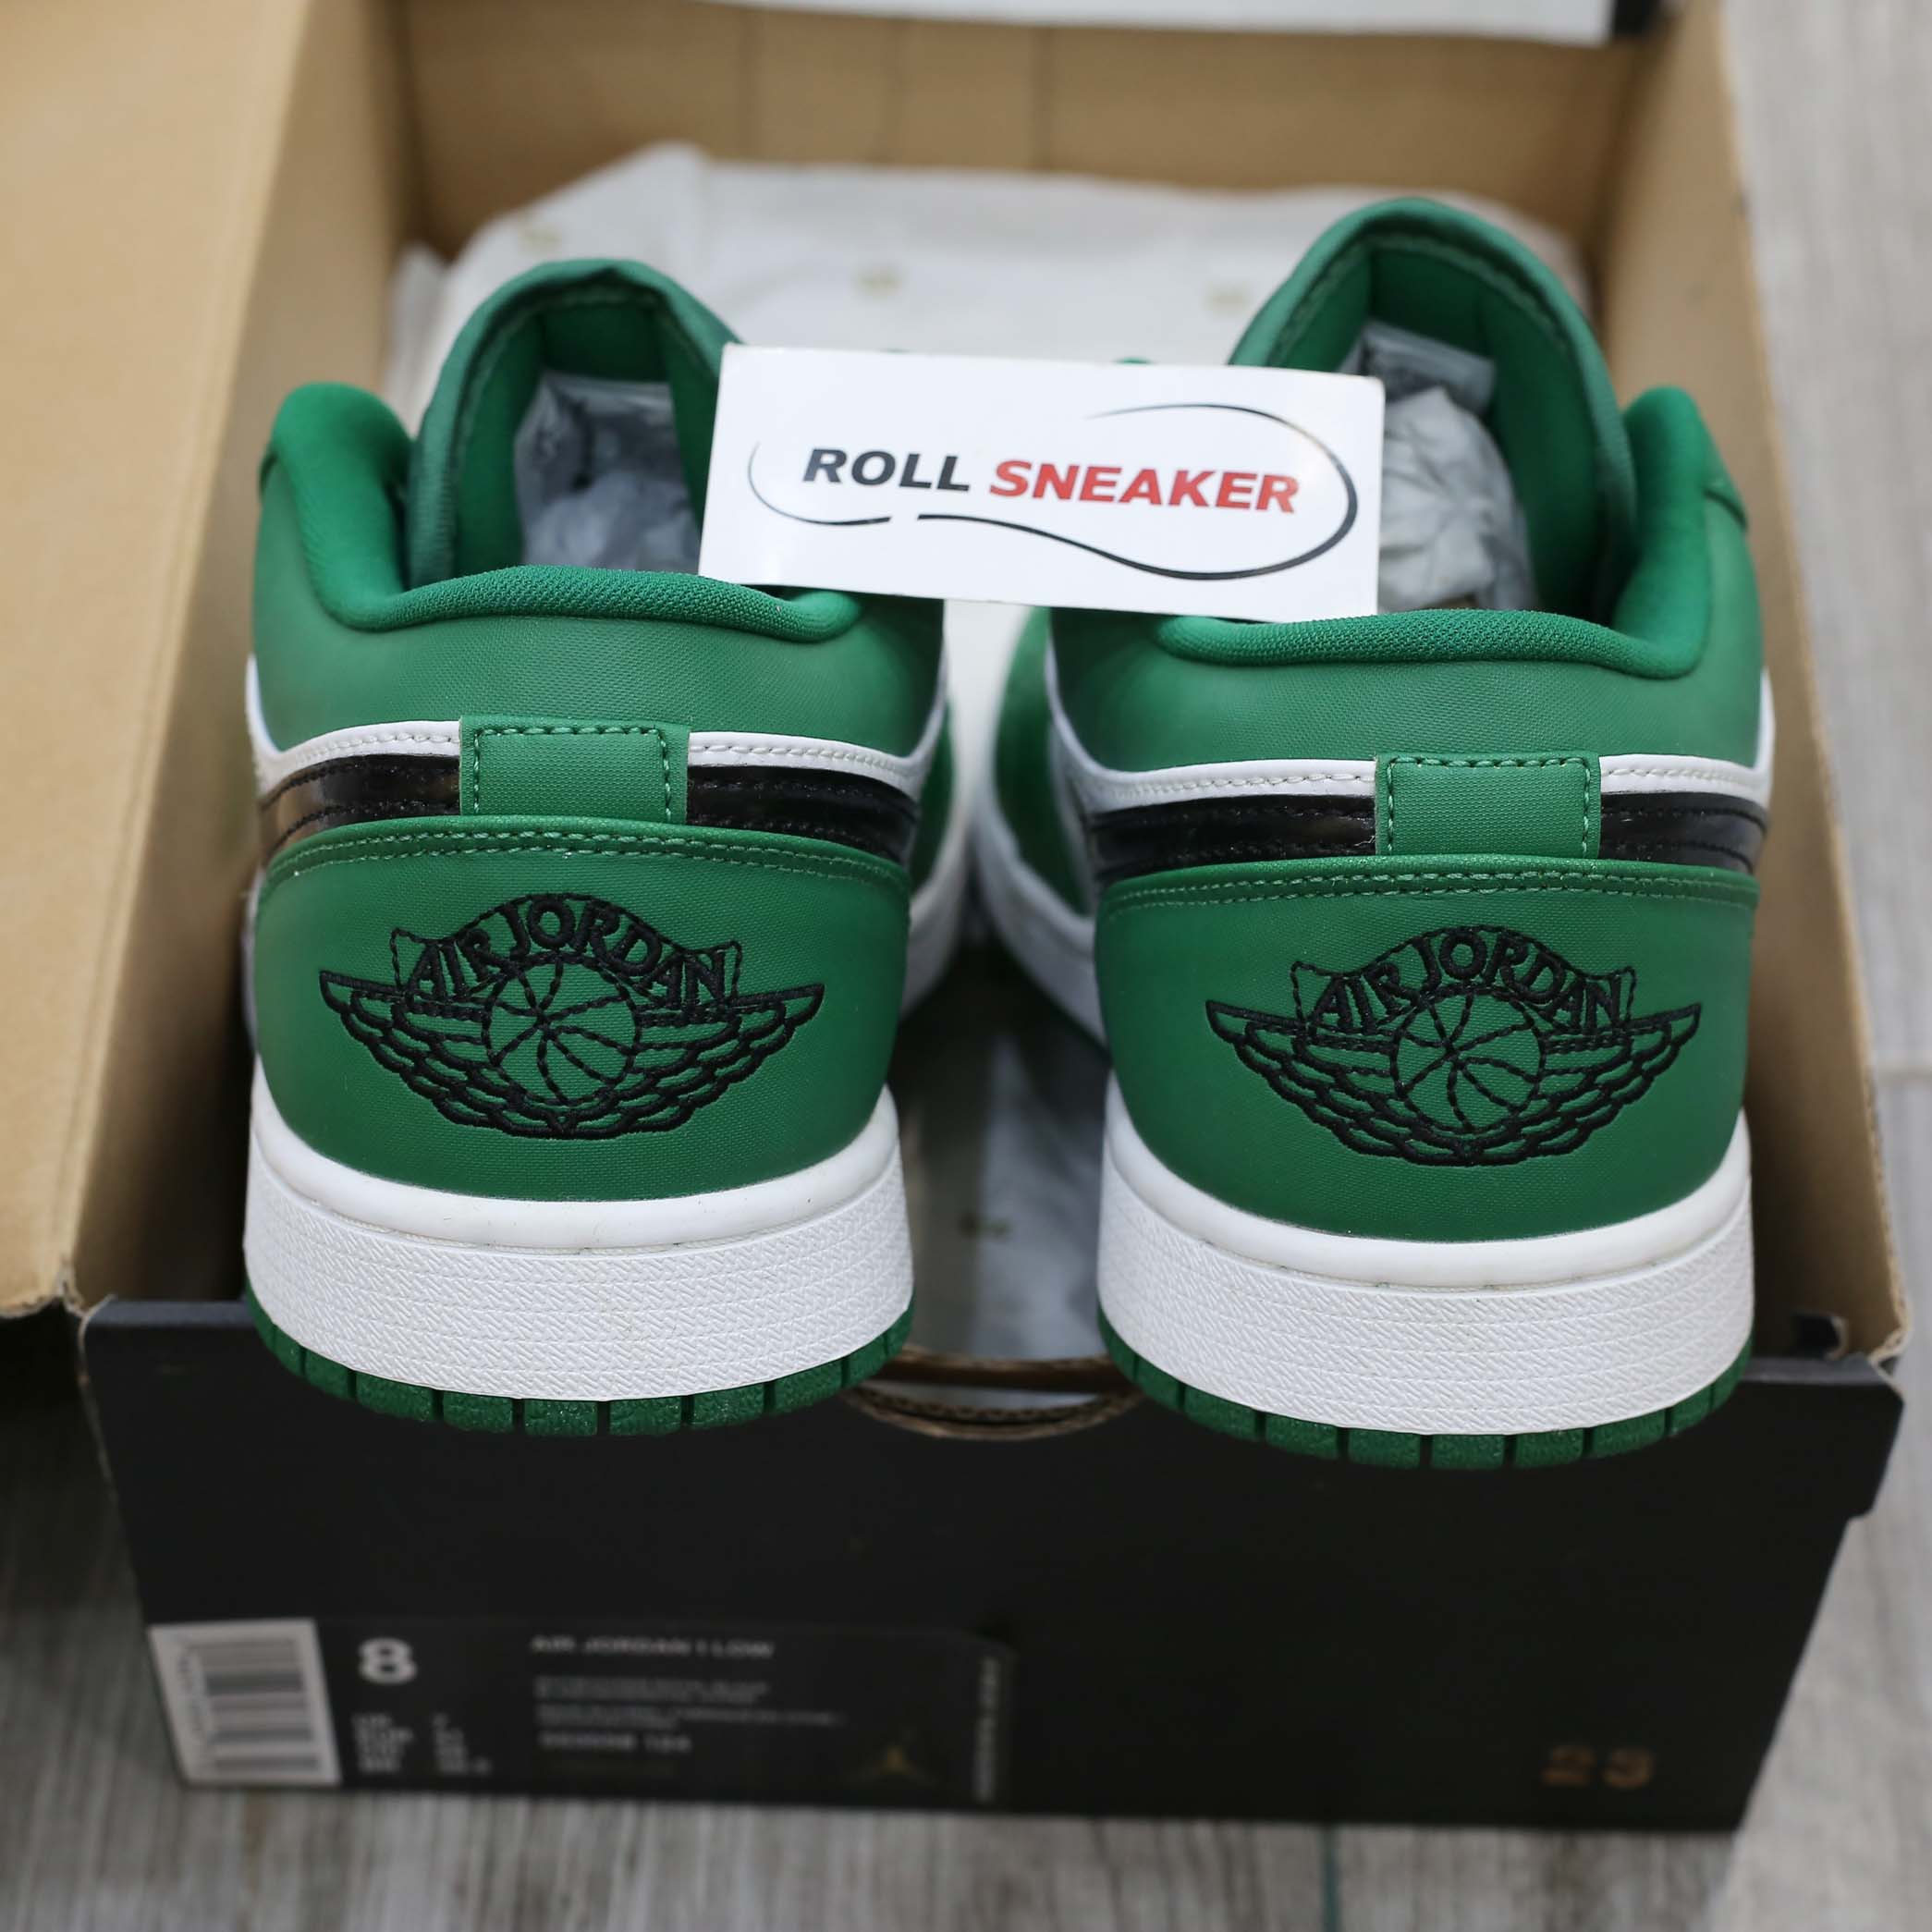 Nike Air Jordan 1 Low ‘Pine Green’